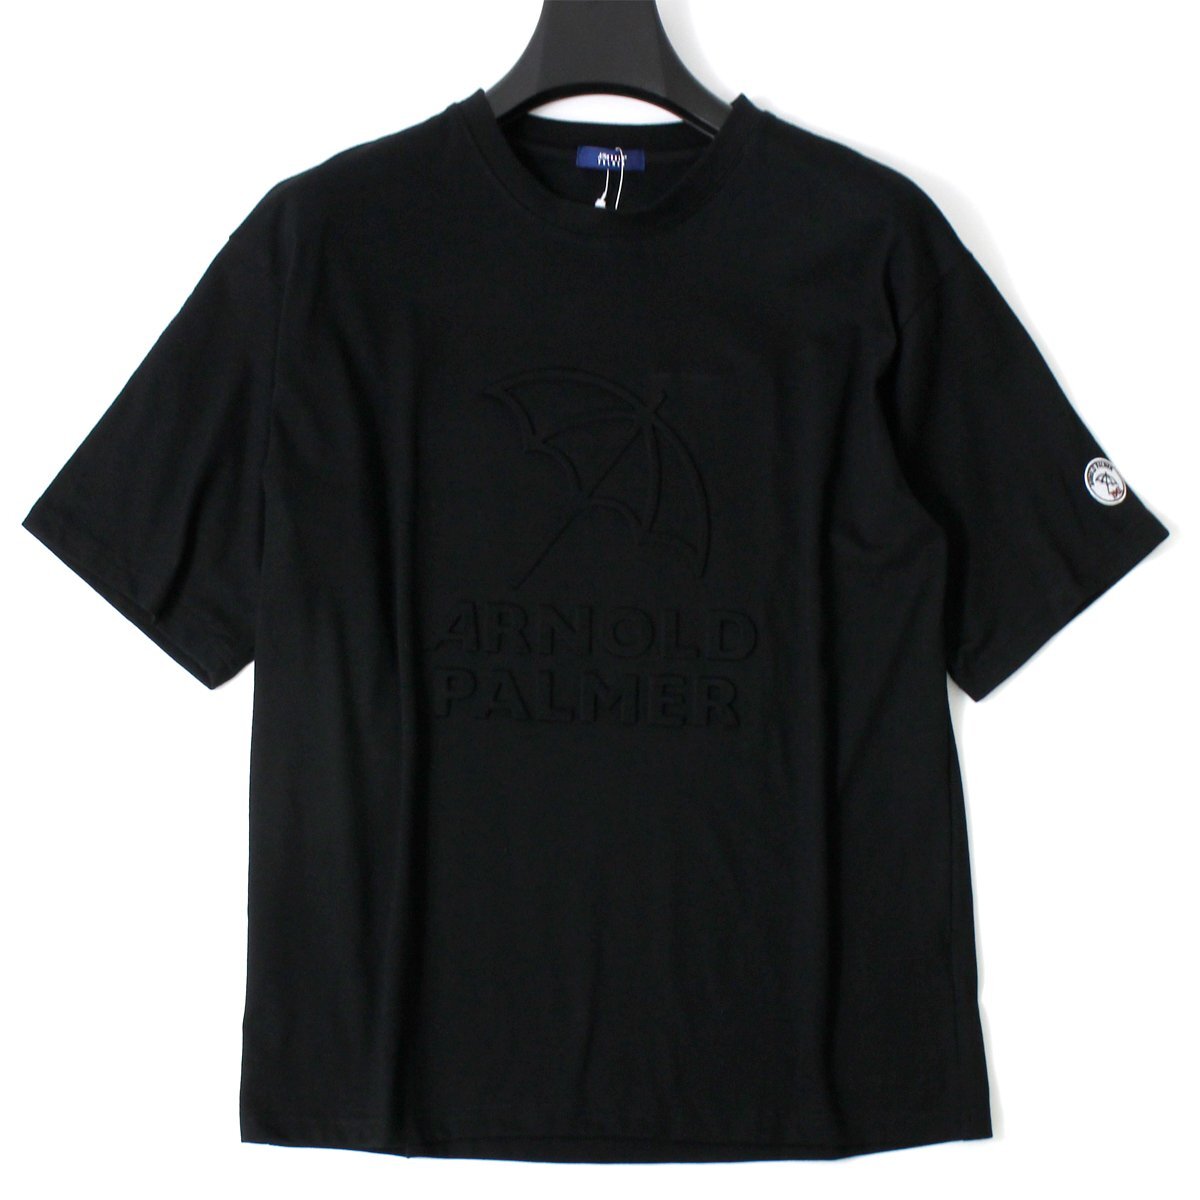  новый товар Arnold Palmer большой Logo en Boss короткий рукав футболка XL чёрный Arnold Palmer рубашка tops мужской casual *CG2327C